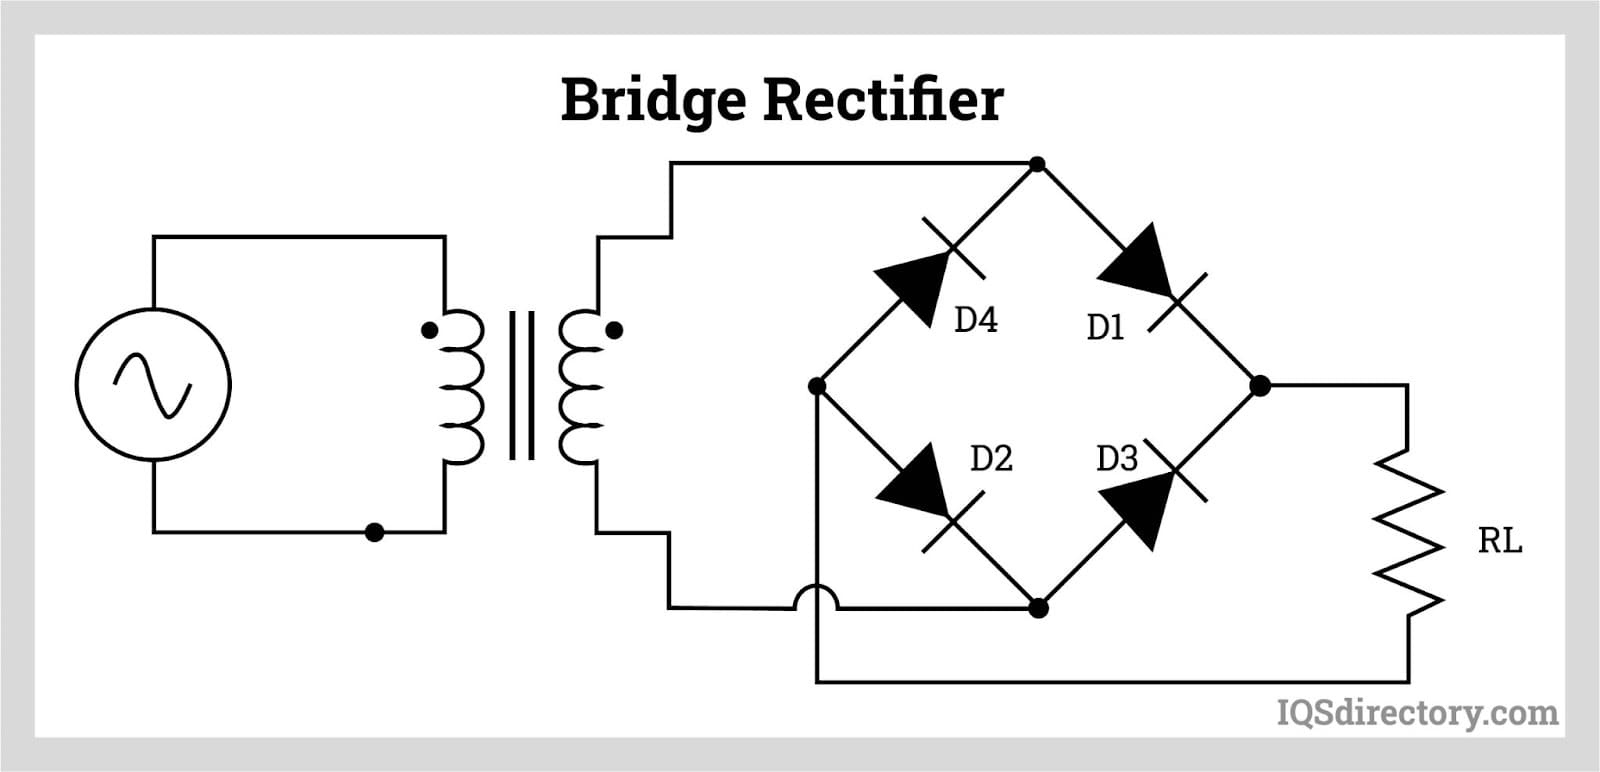 Bridge Rectifier